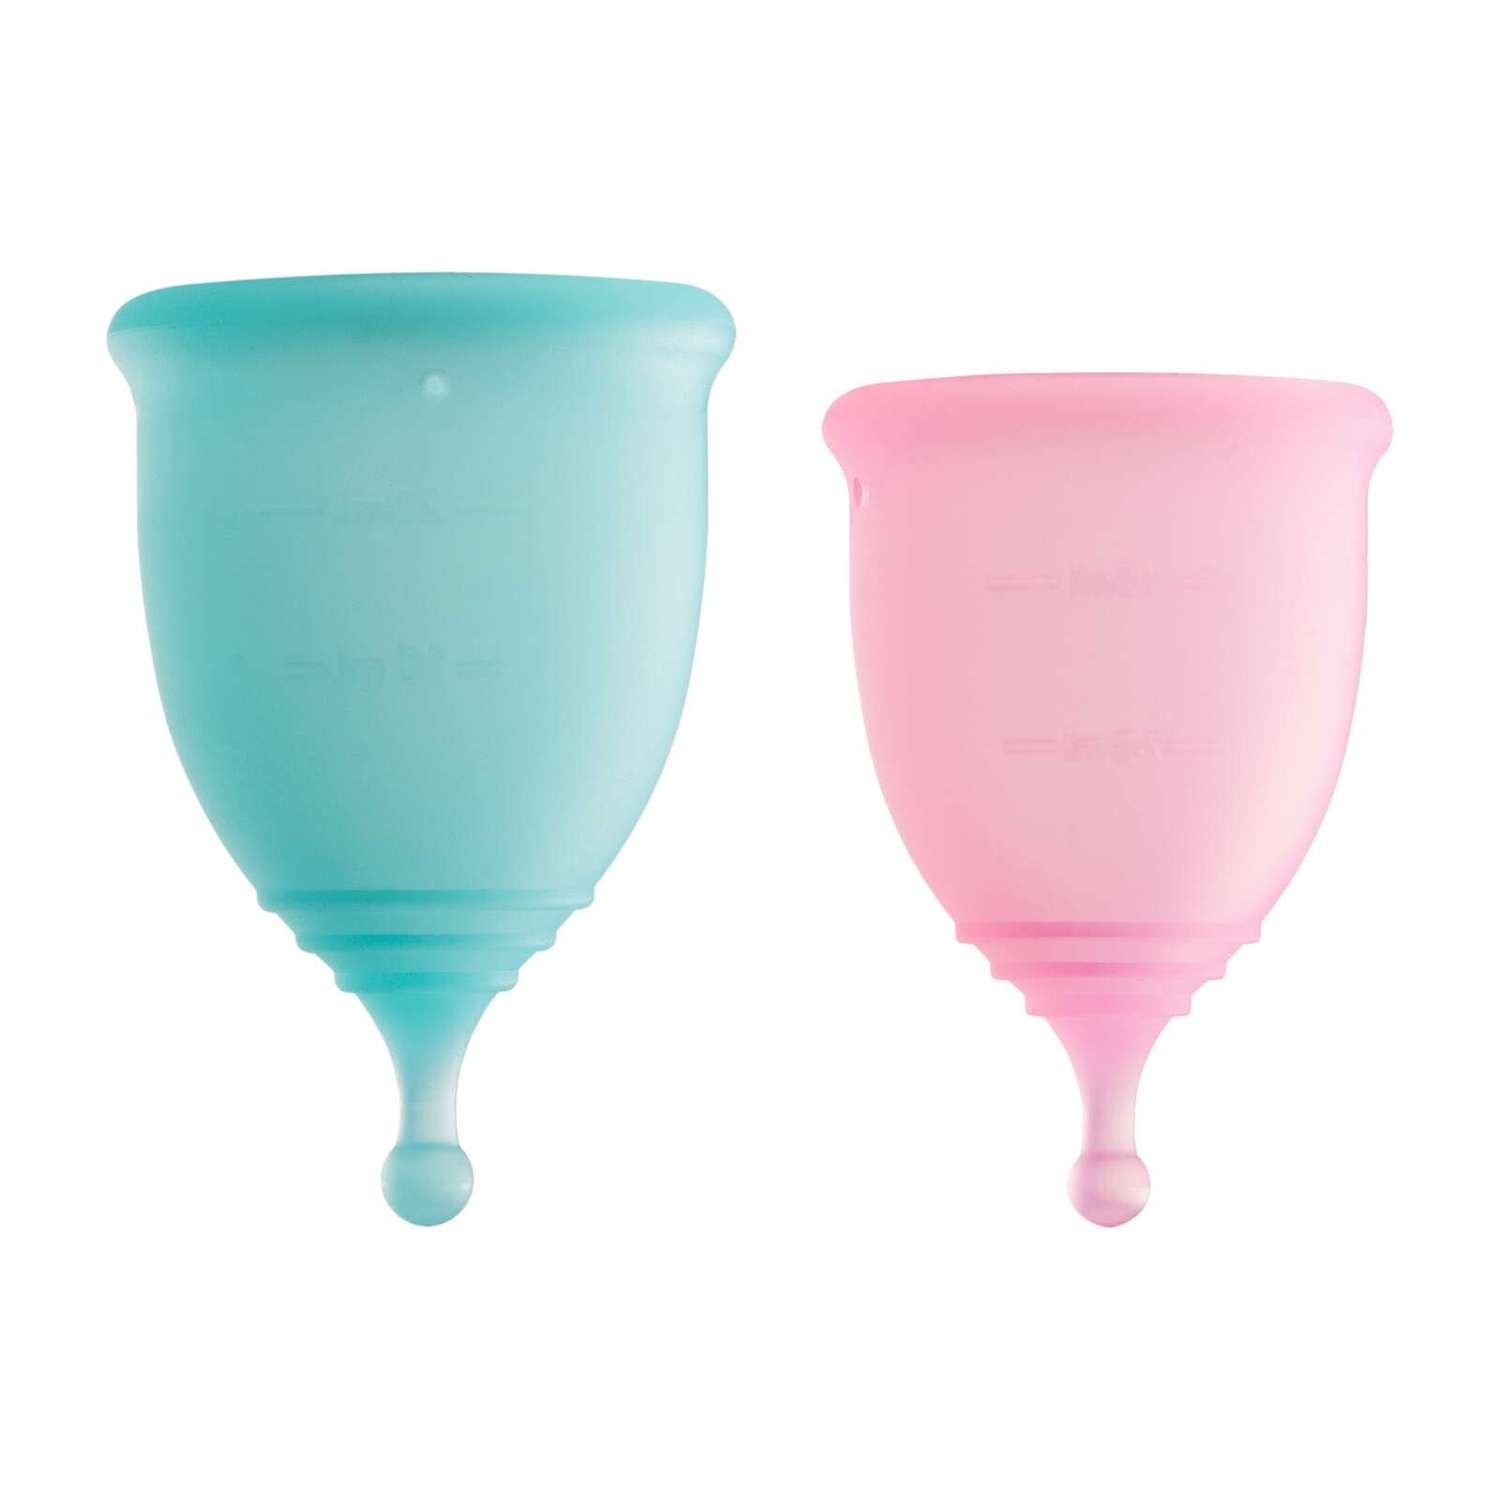 Менструальные чаши GLOW CARE Classic c мешочком размеры S (18 мл) и M (25 мл) - фото 2